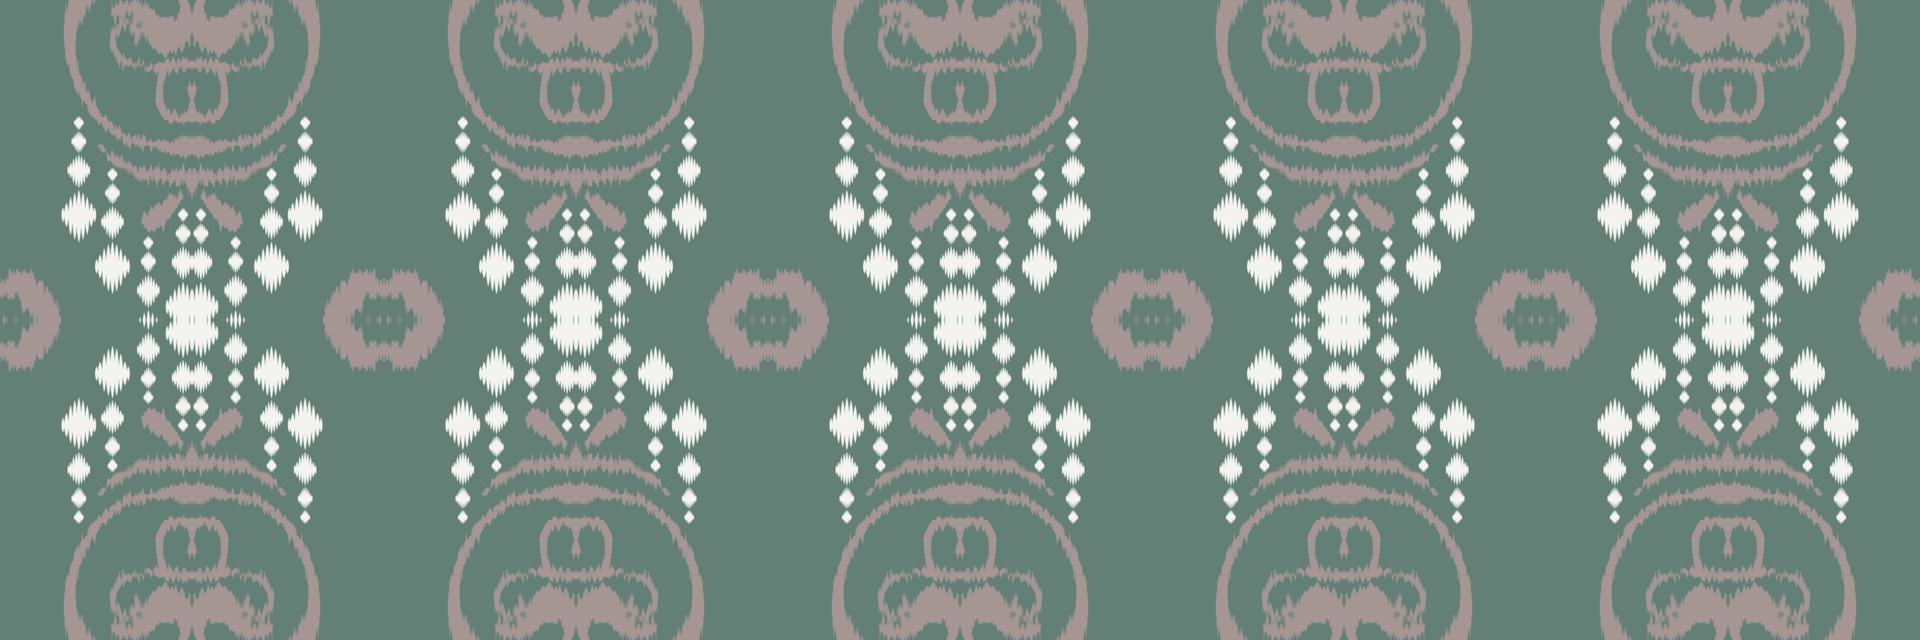 ikat diseño oriental étnico tradicional geométrico de color tribal transparente para el fondo. bordado popular, indio, escandinavo, gitano, mexicano, alfombra africana, papel tapiz. vector